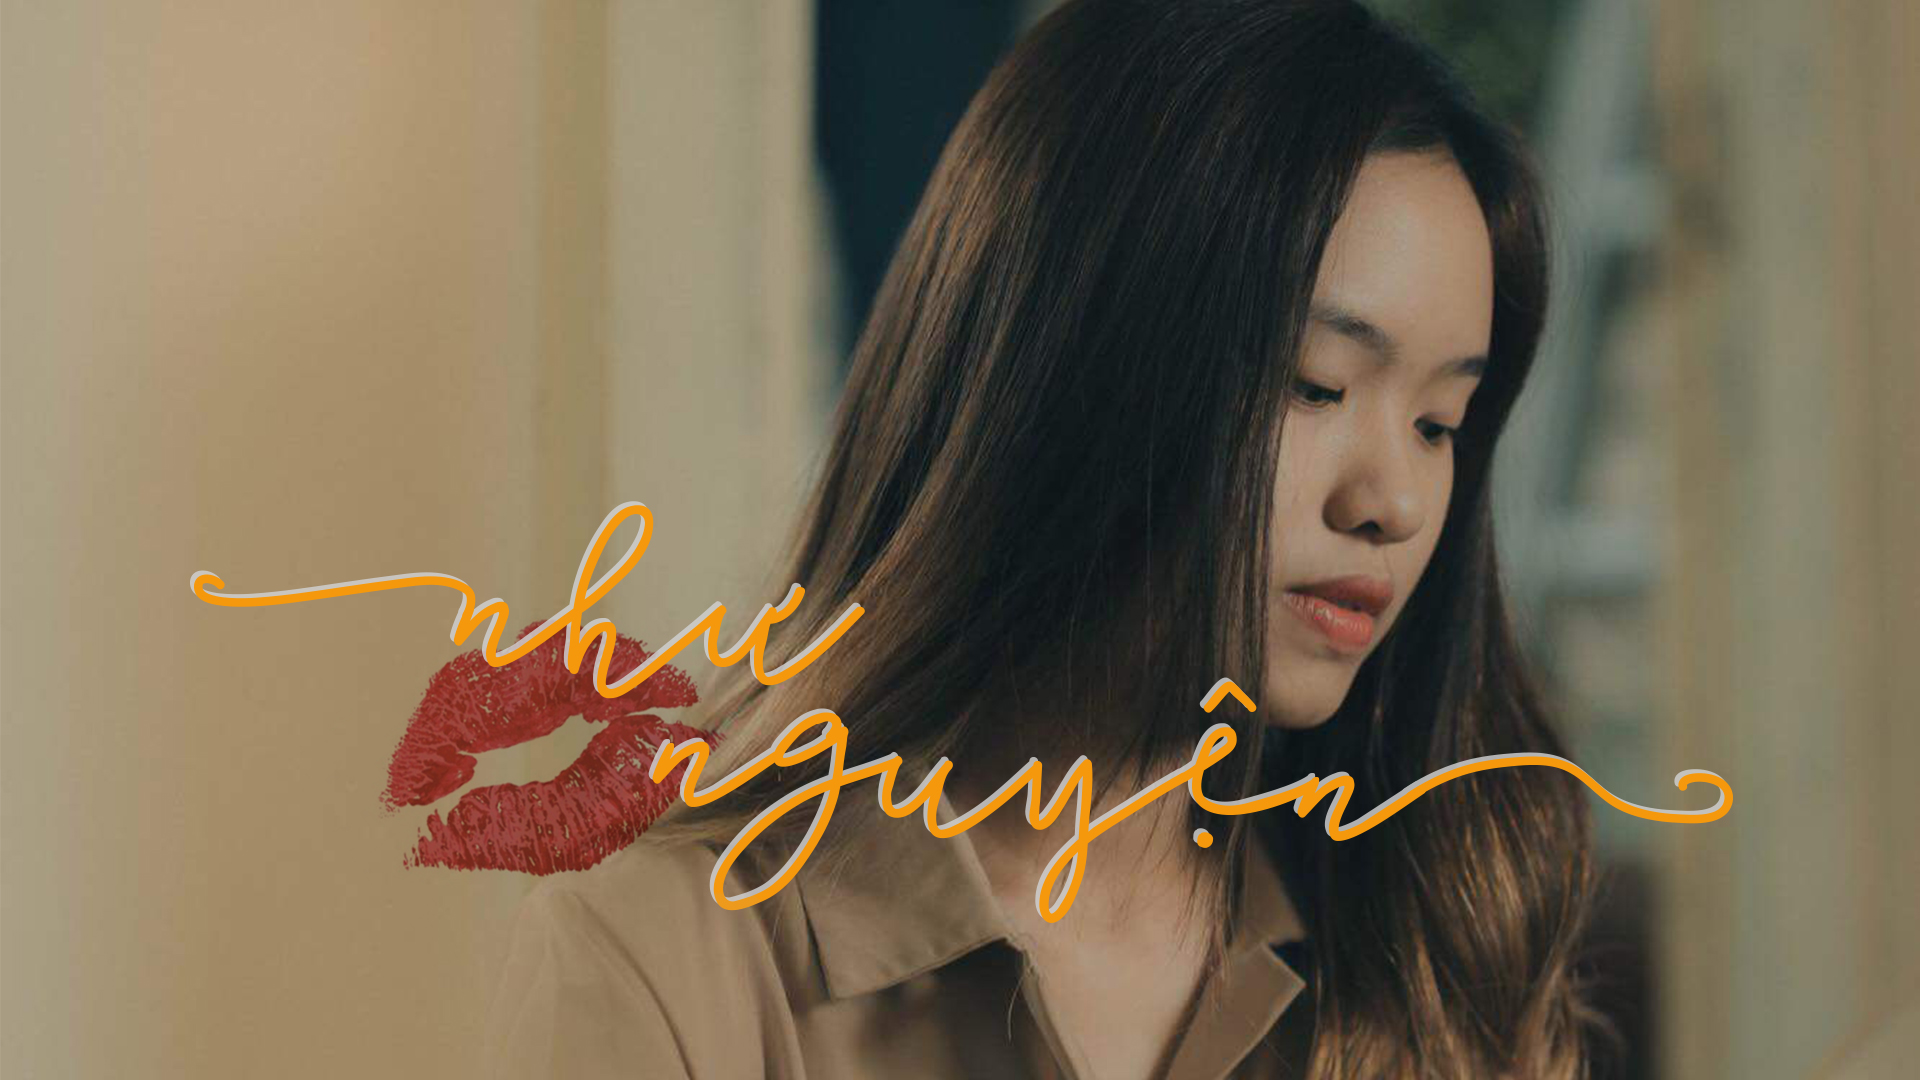 [Top 15 Miss] Nguyễn Như Nguyện – Điệu valse trên mũi sneaker